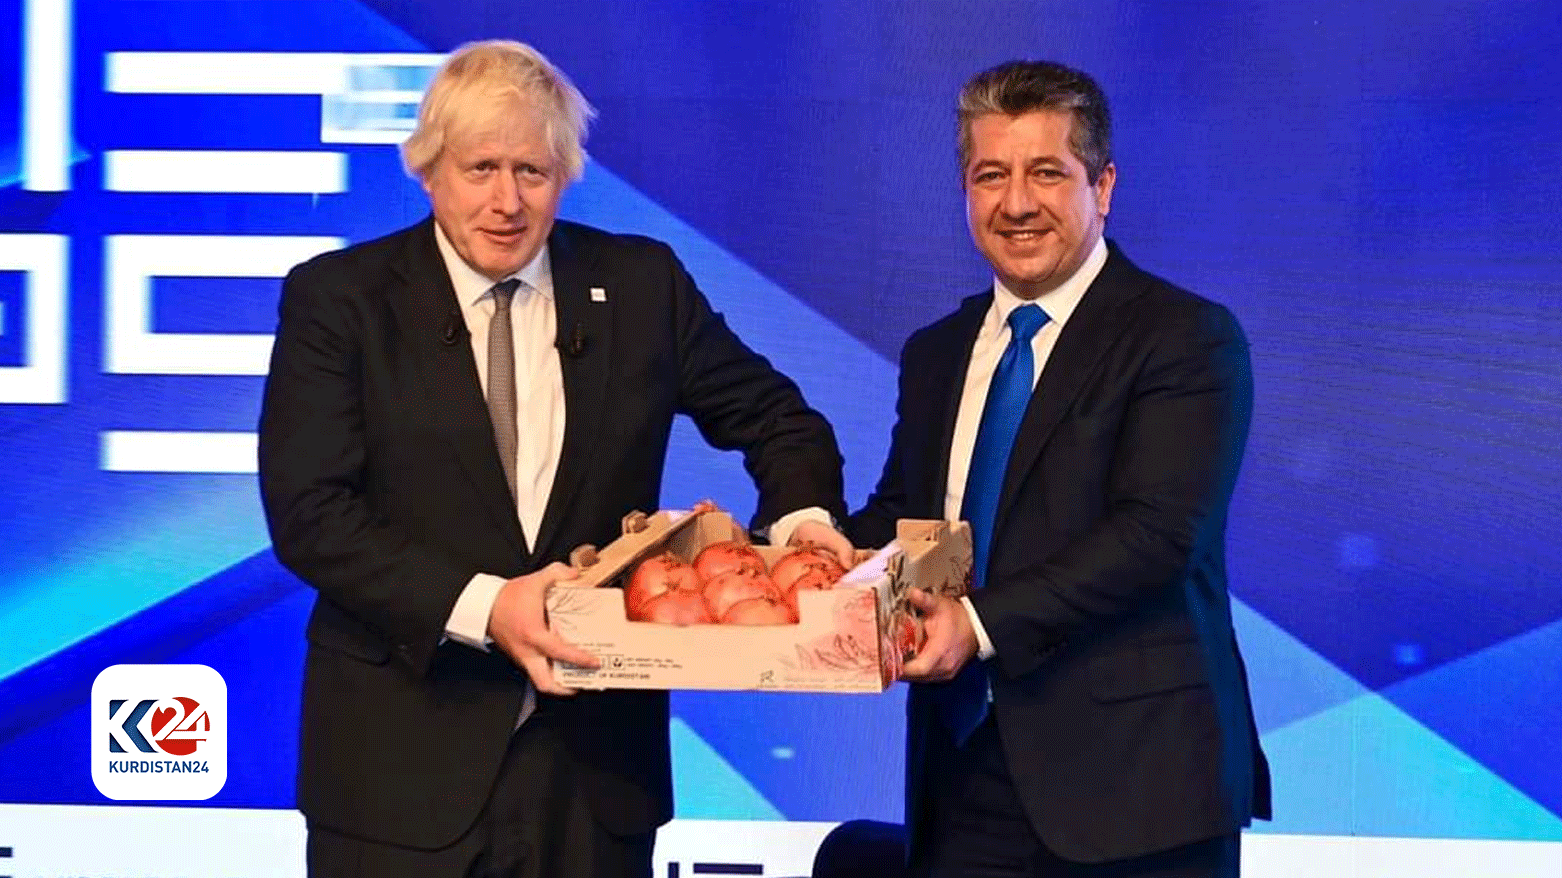 مسرور بارزانی، نخست وزیر اقلیم کوردستان در حال اهدای انار و عسل اقلیم به بوریس، جانسون، نخست وزیر پیشین اقلیم کردستان